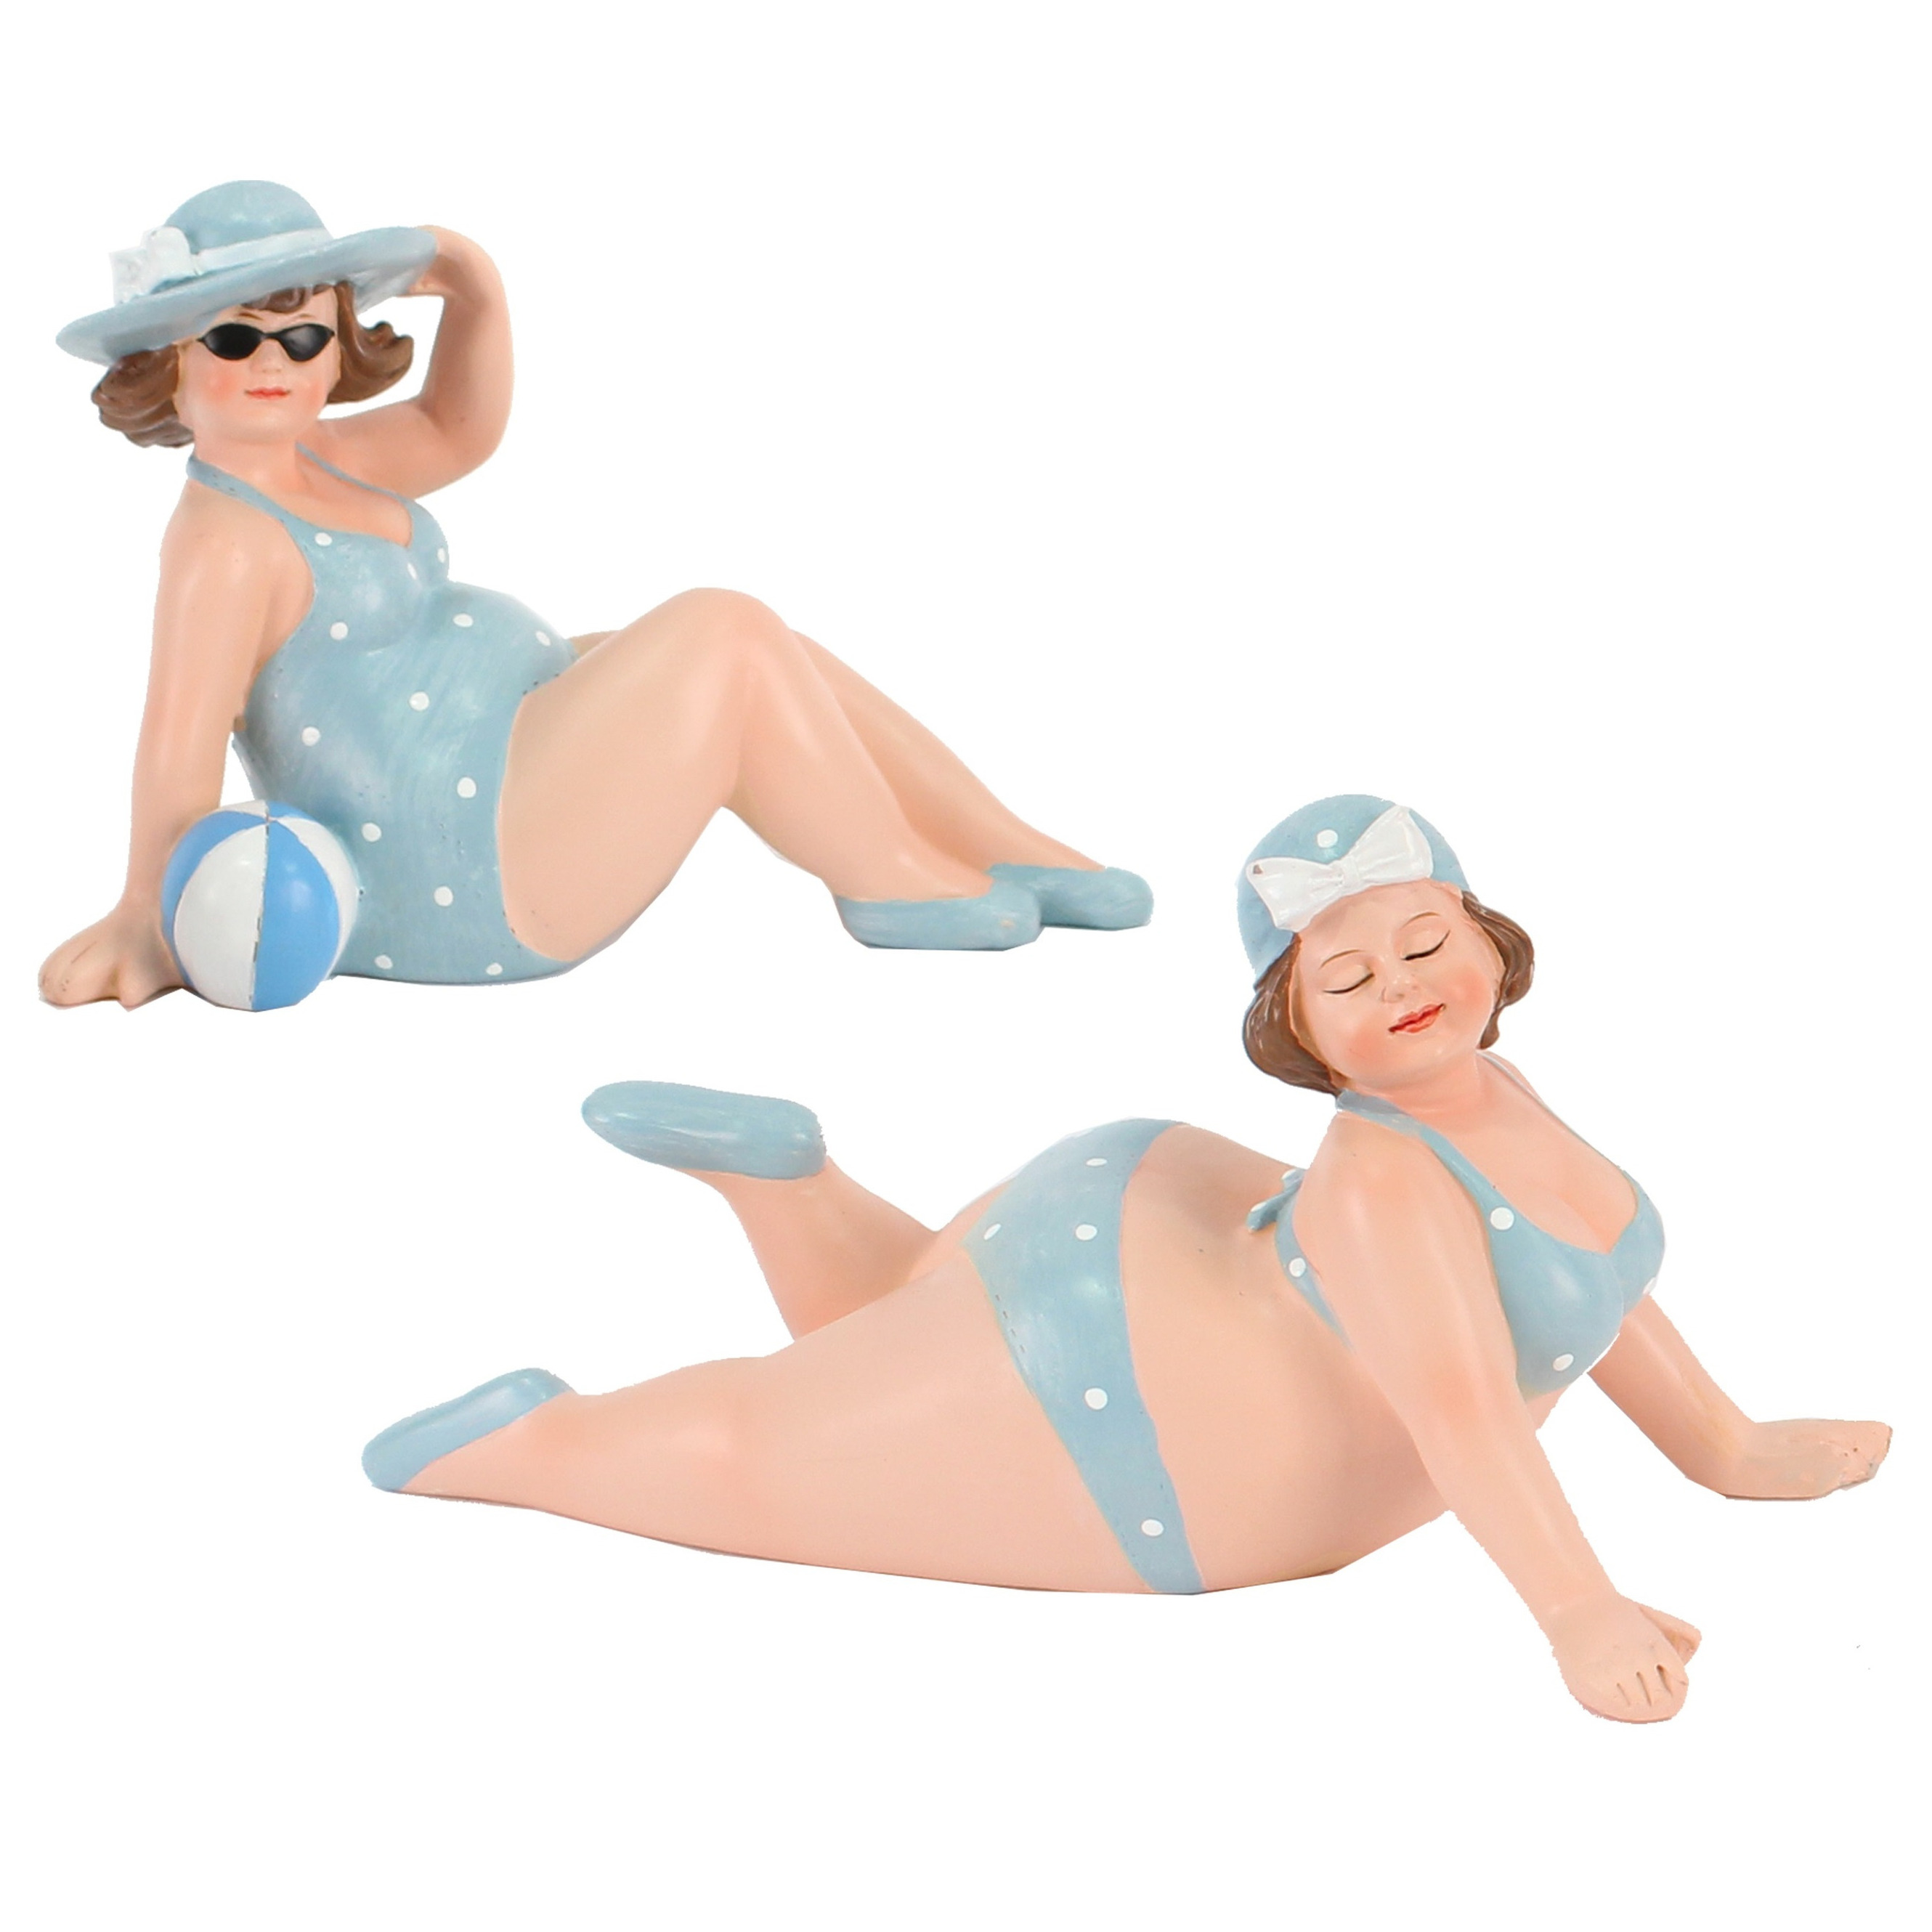 Woonkamer decoratie beeldjes set van 2 dikke dames blauw badpak 17 cm